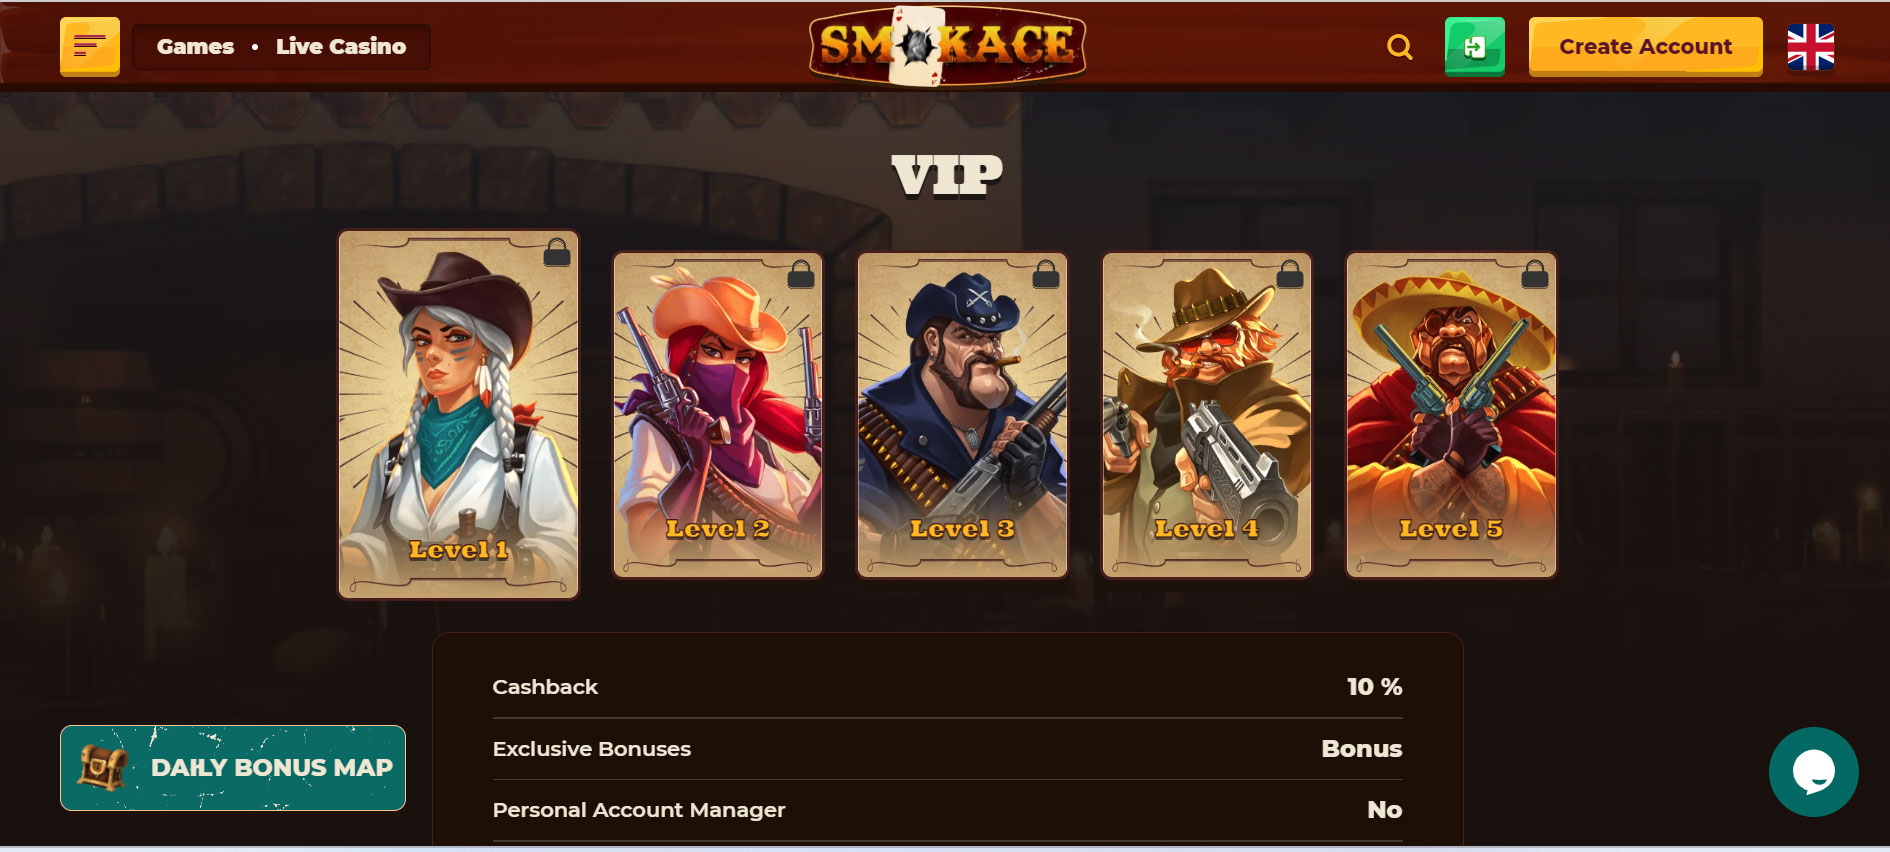 SmokeAce Casino VIP Program